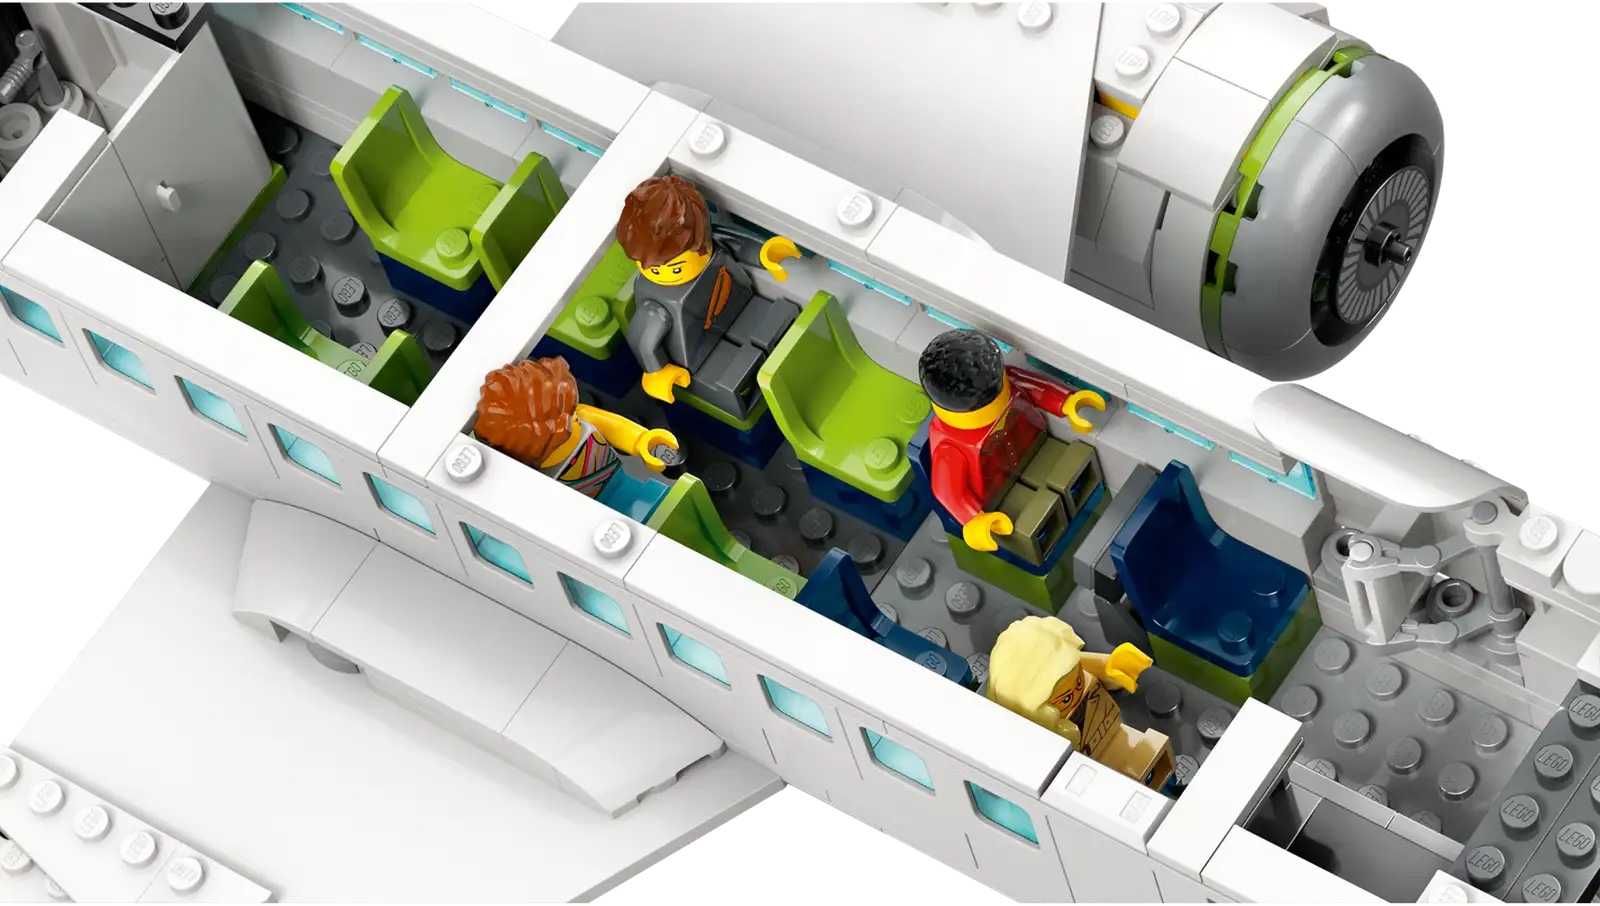 [高雄 飛米樂高積木] 9月新品 LEGO 60367 City-客機